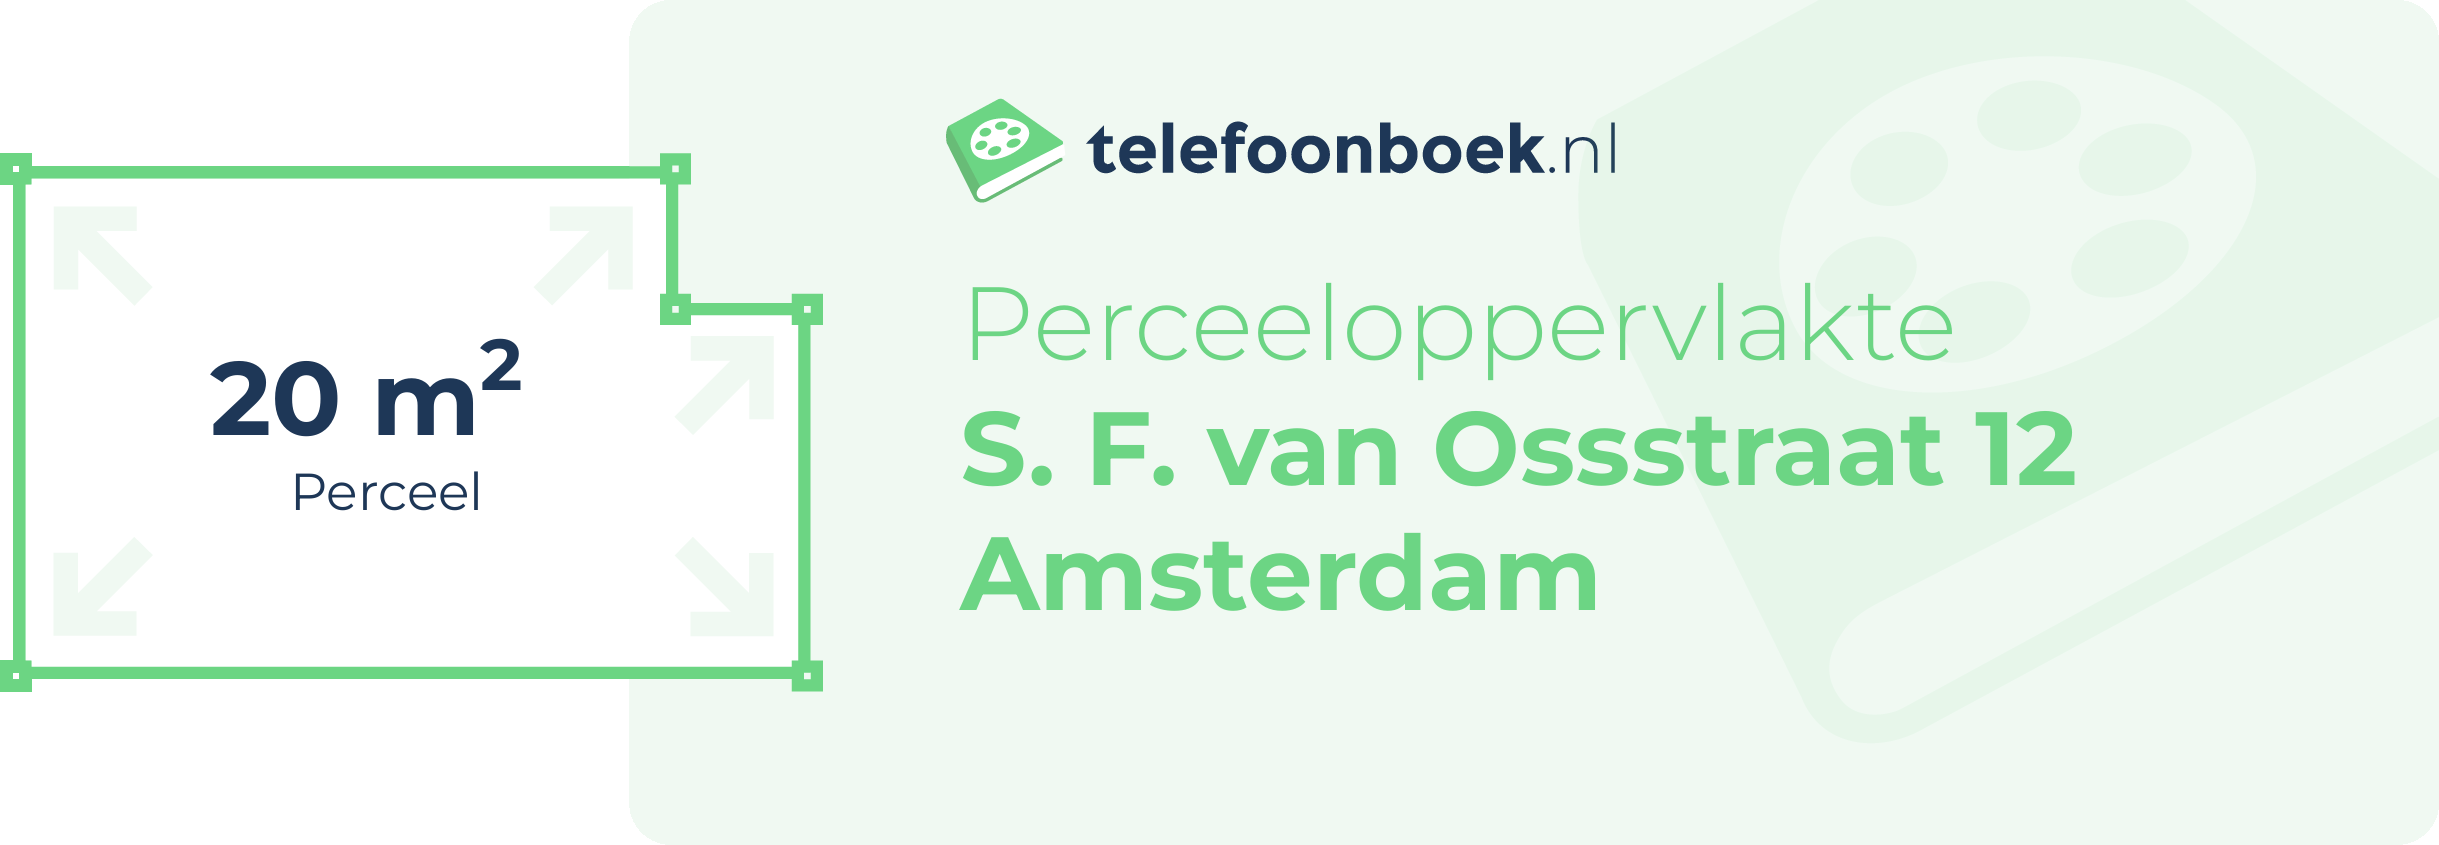 Perceeloppervlakte S. F. Van Ossstraat 12 Amsterdam